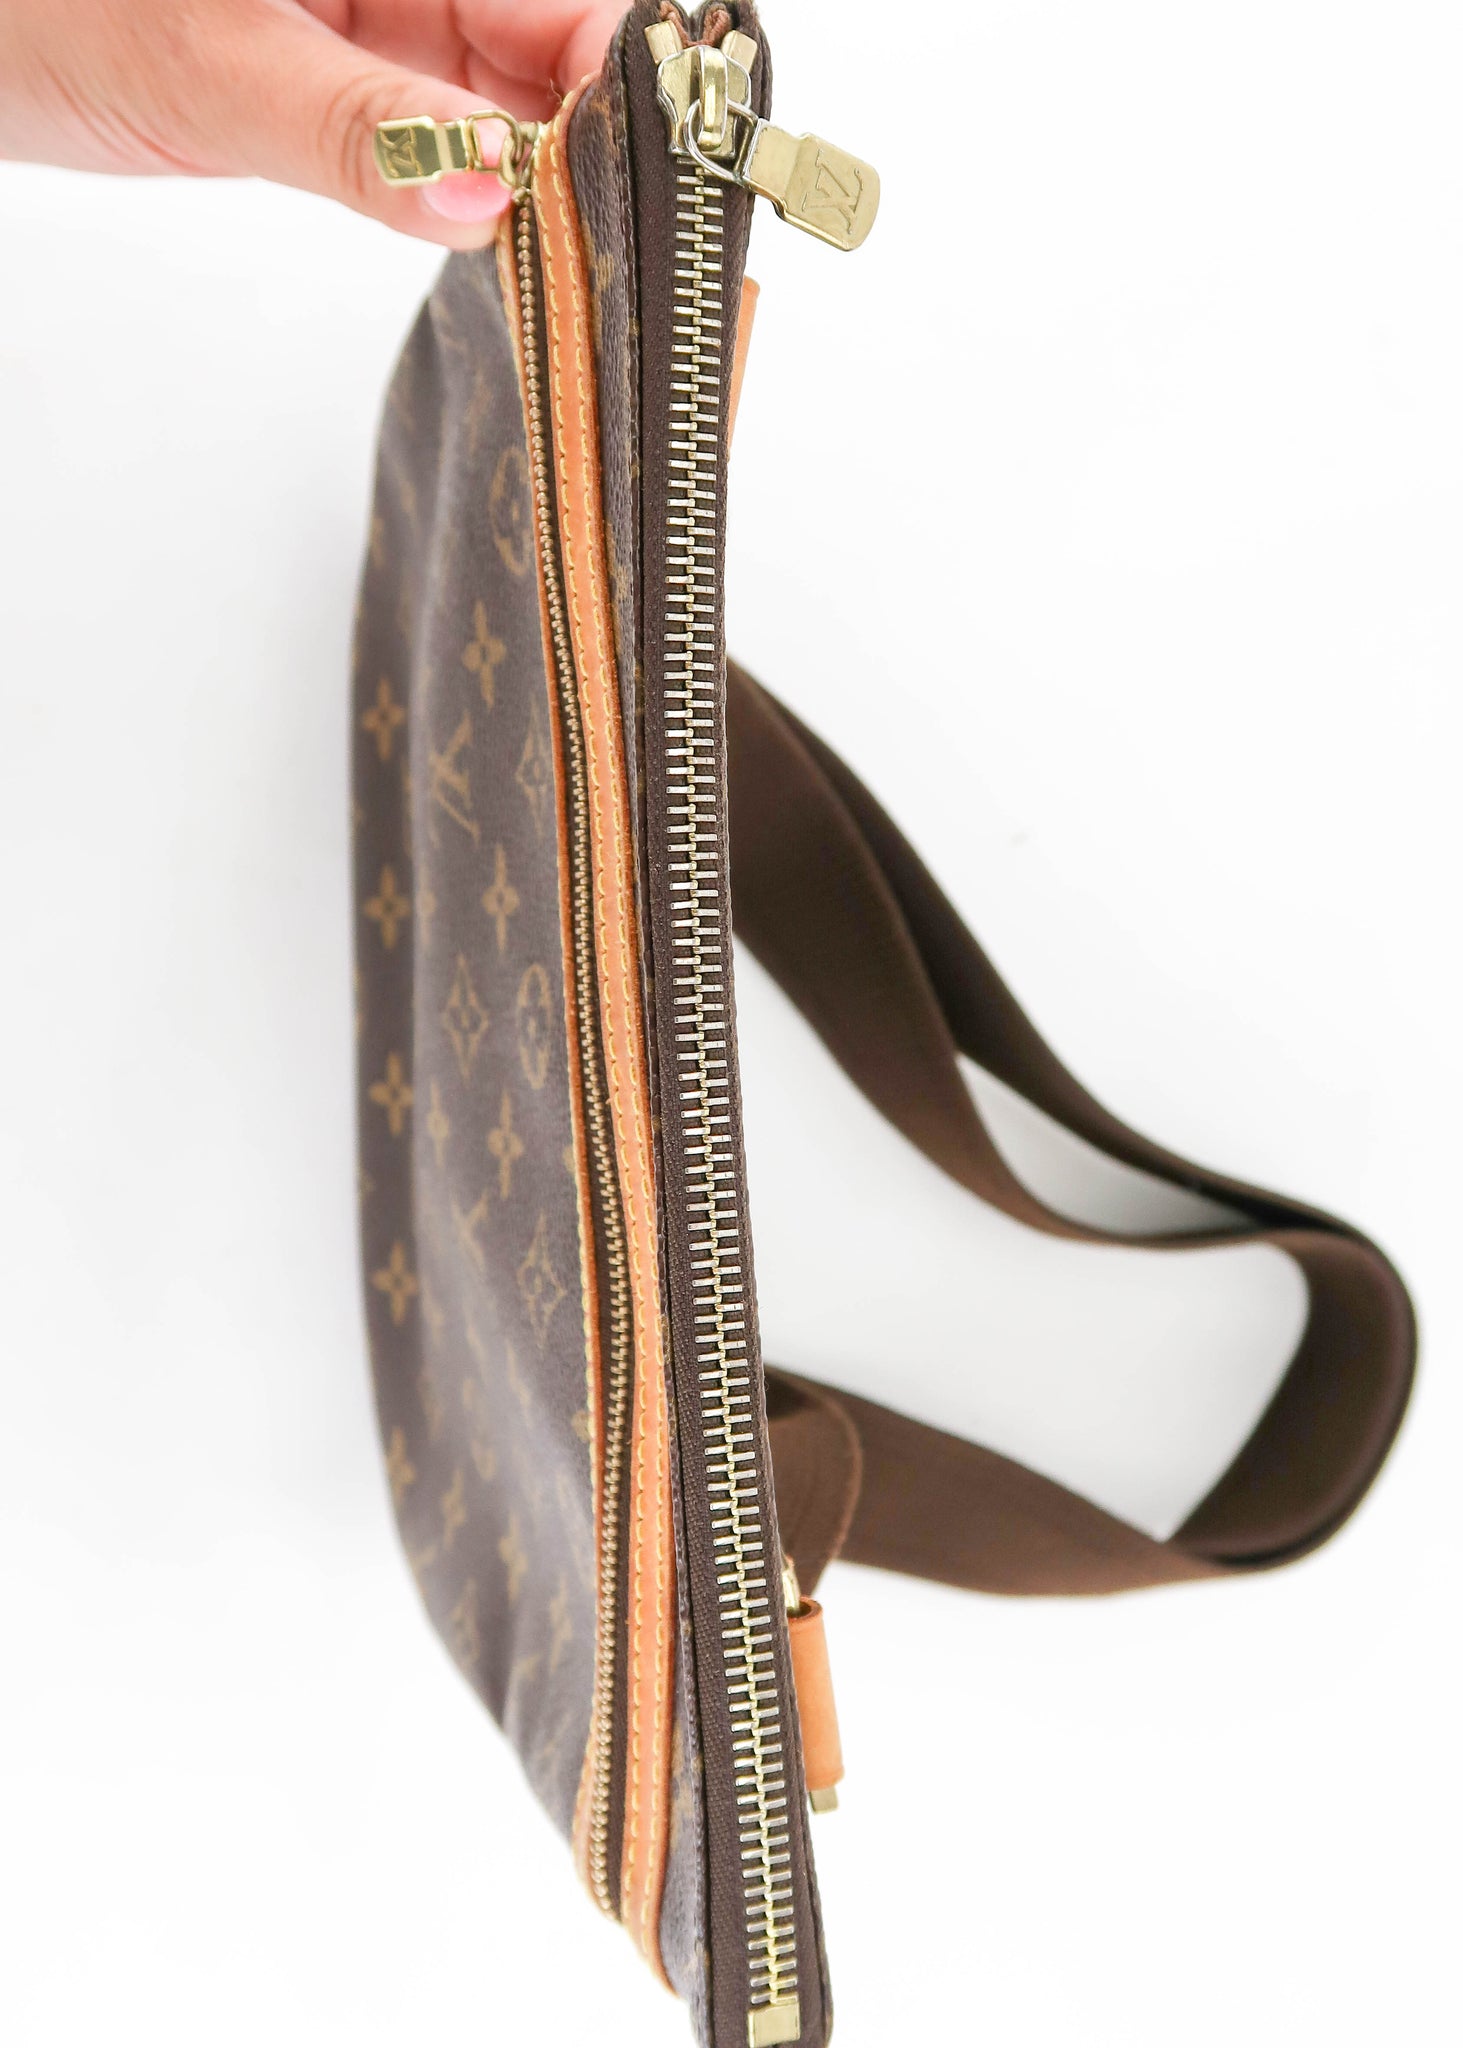 Shop for Louis Vuitton Monogram Canvas Leather Bosphore Pochette